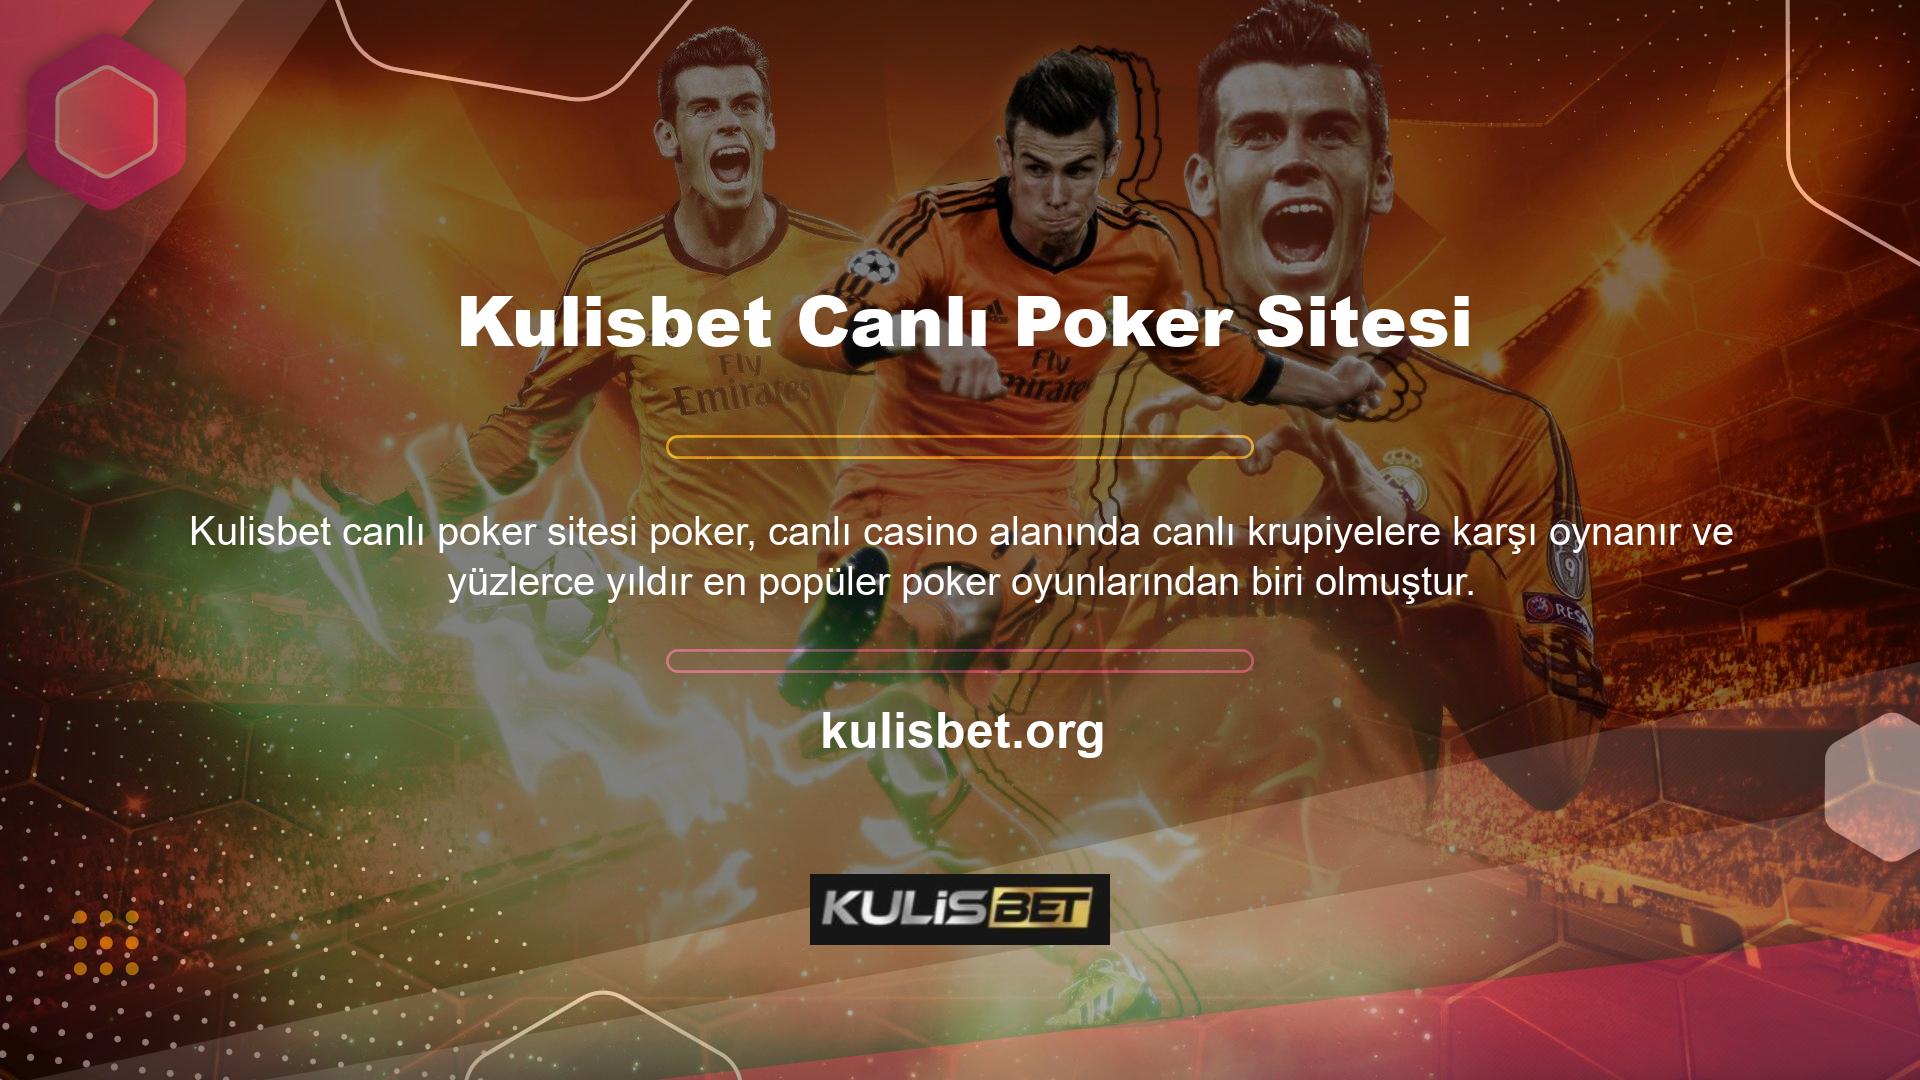 Çevrimiçi casino siteleri, poker tutkunları için daha fazla el oynamanıza yardımcı olacak bonuslarla birlikte çok çeşitli oyunlar sunar